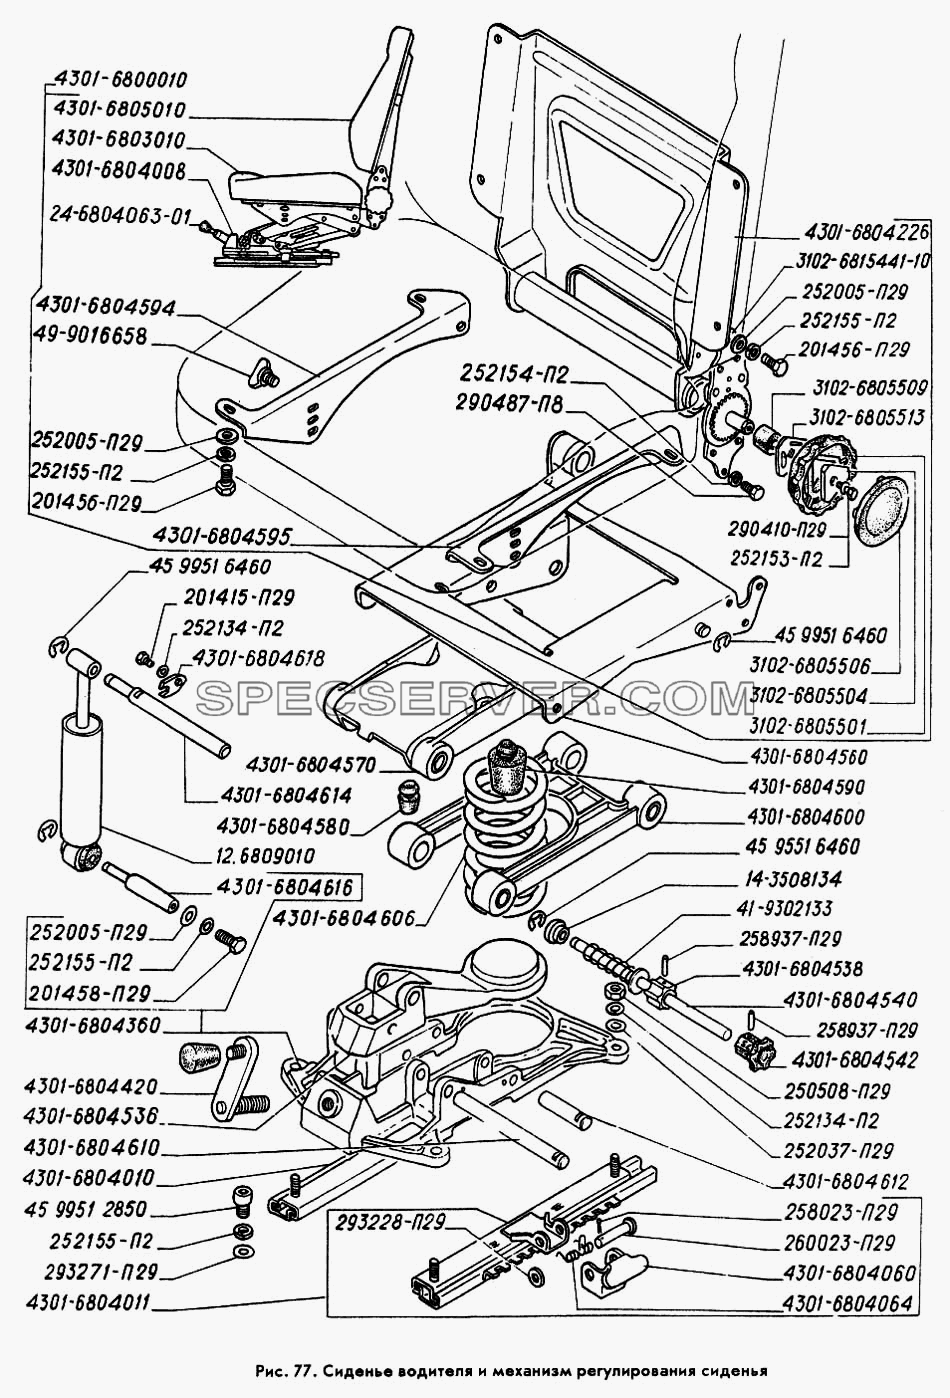 Сиденье водителя и механизм регулирования сиденья для ГАЗ-3309 (список запасных частей)